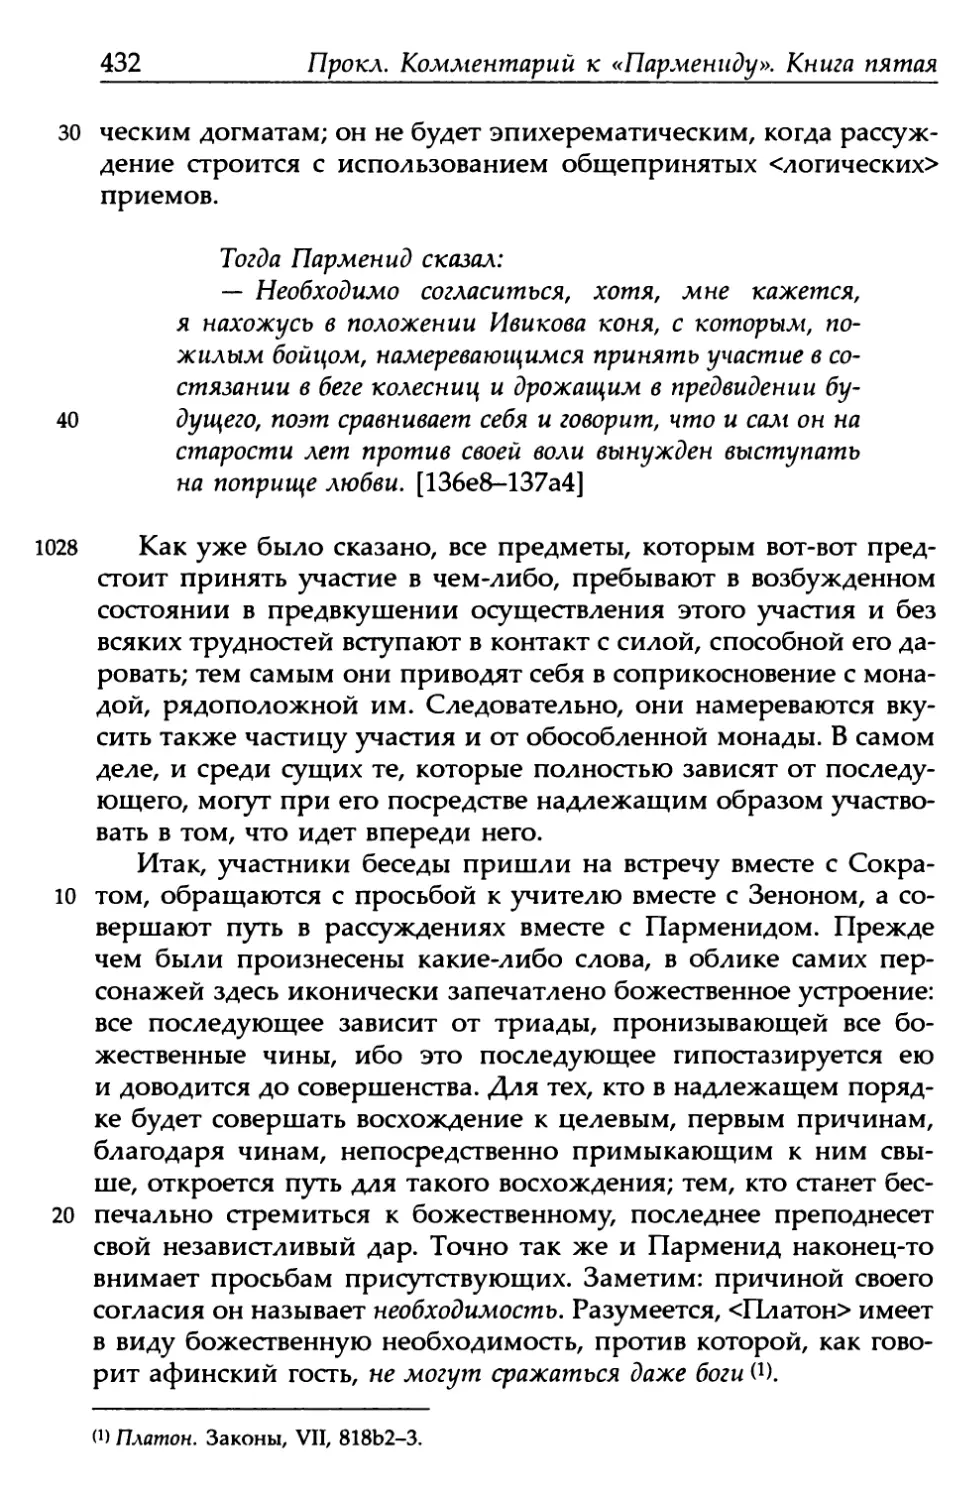 «Парменид», 136е8-137а4